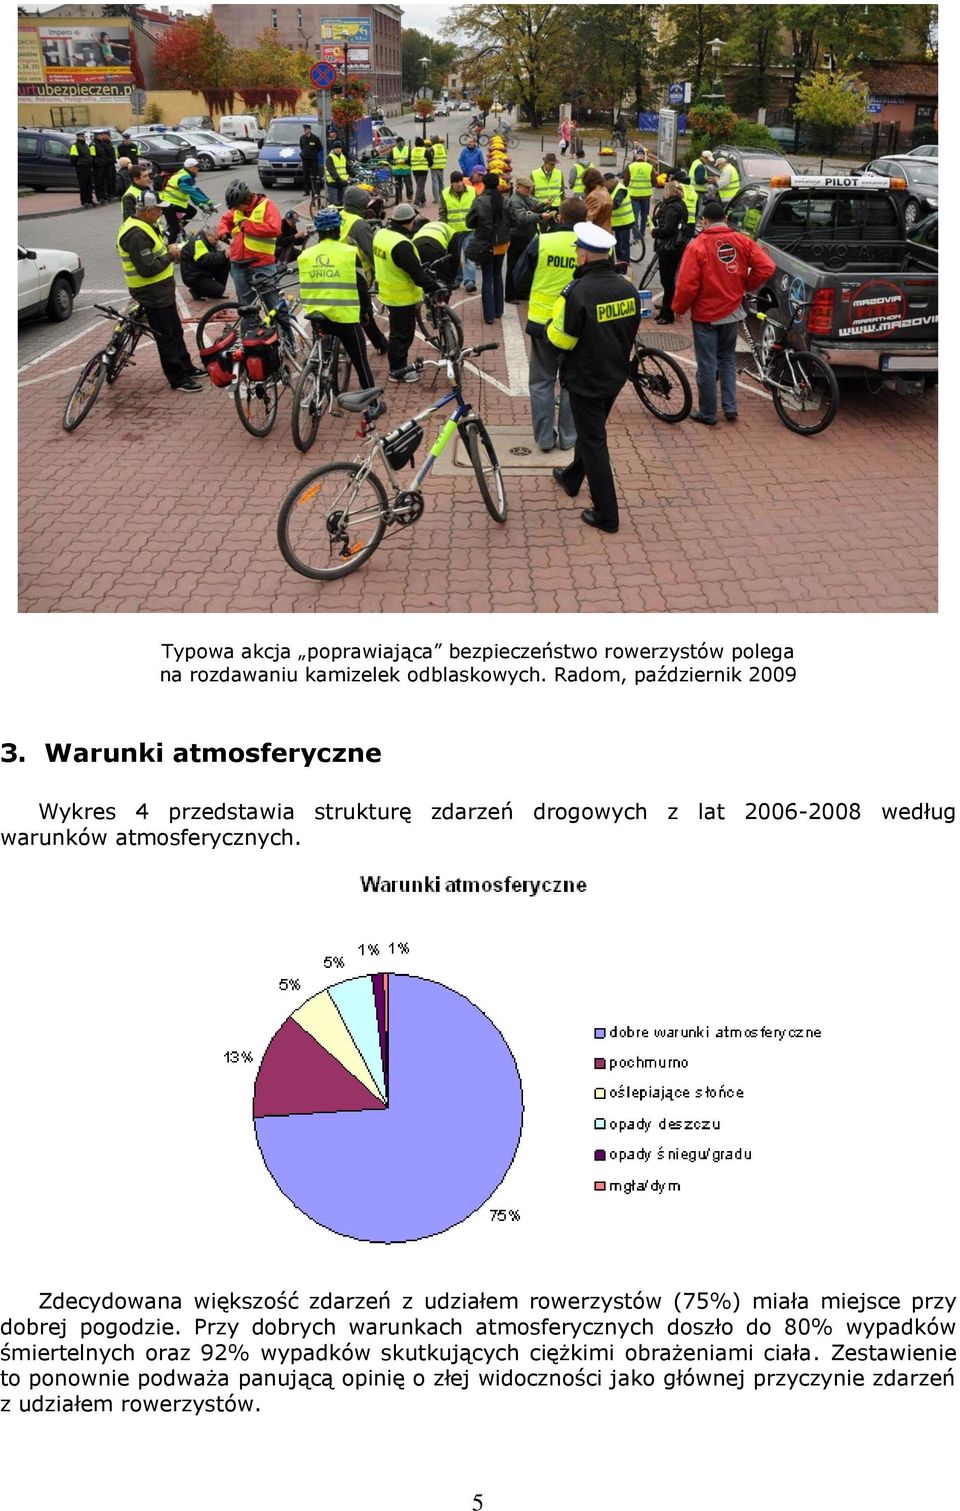 Zdecydowana większość zdarzeń z udziałem rowerzystów (75%) miała miejsce przy dobrej pogodzie.